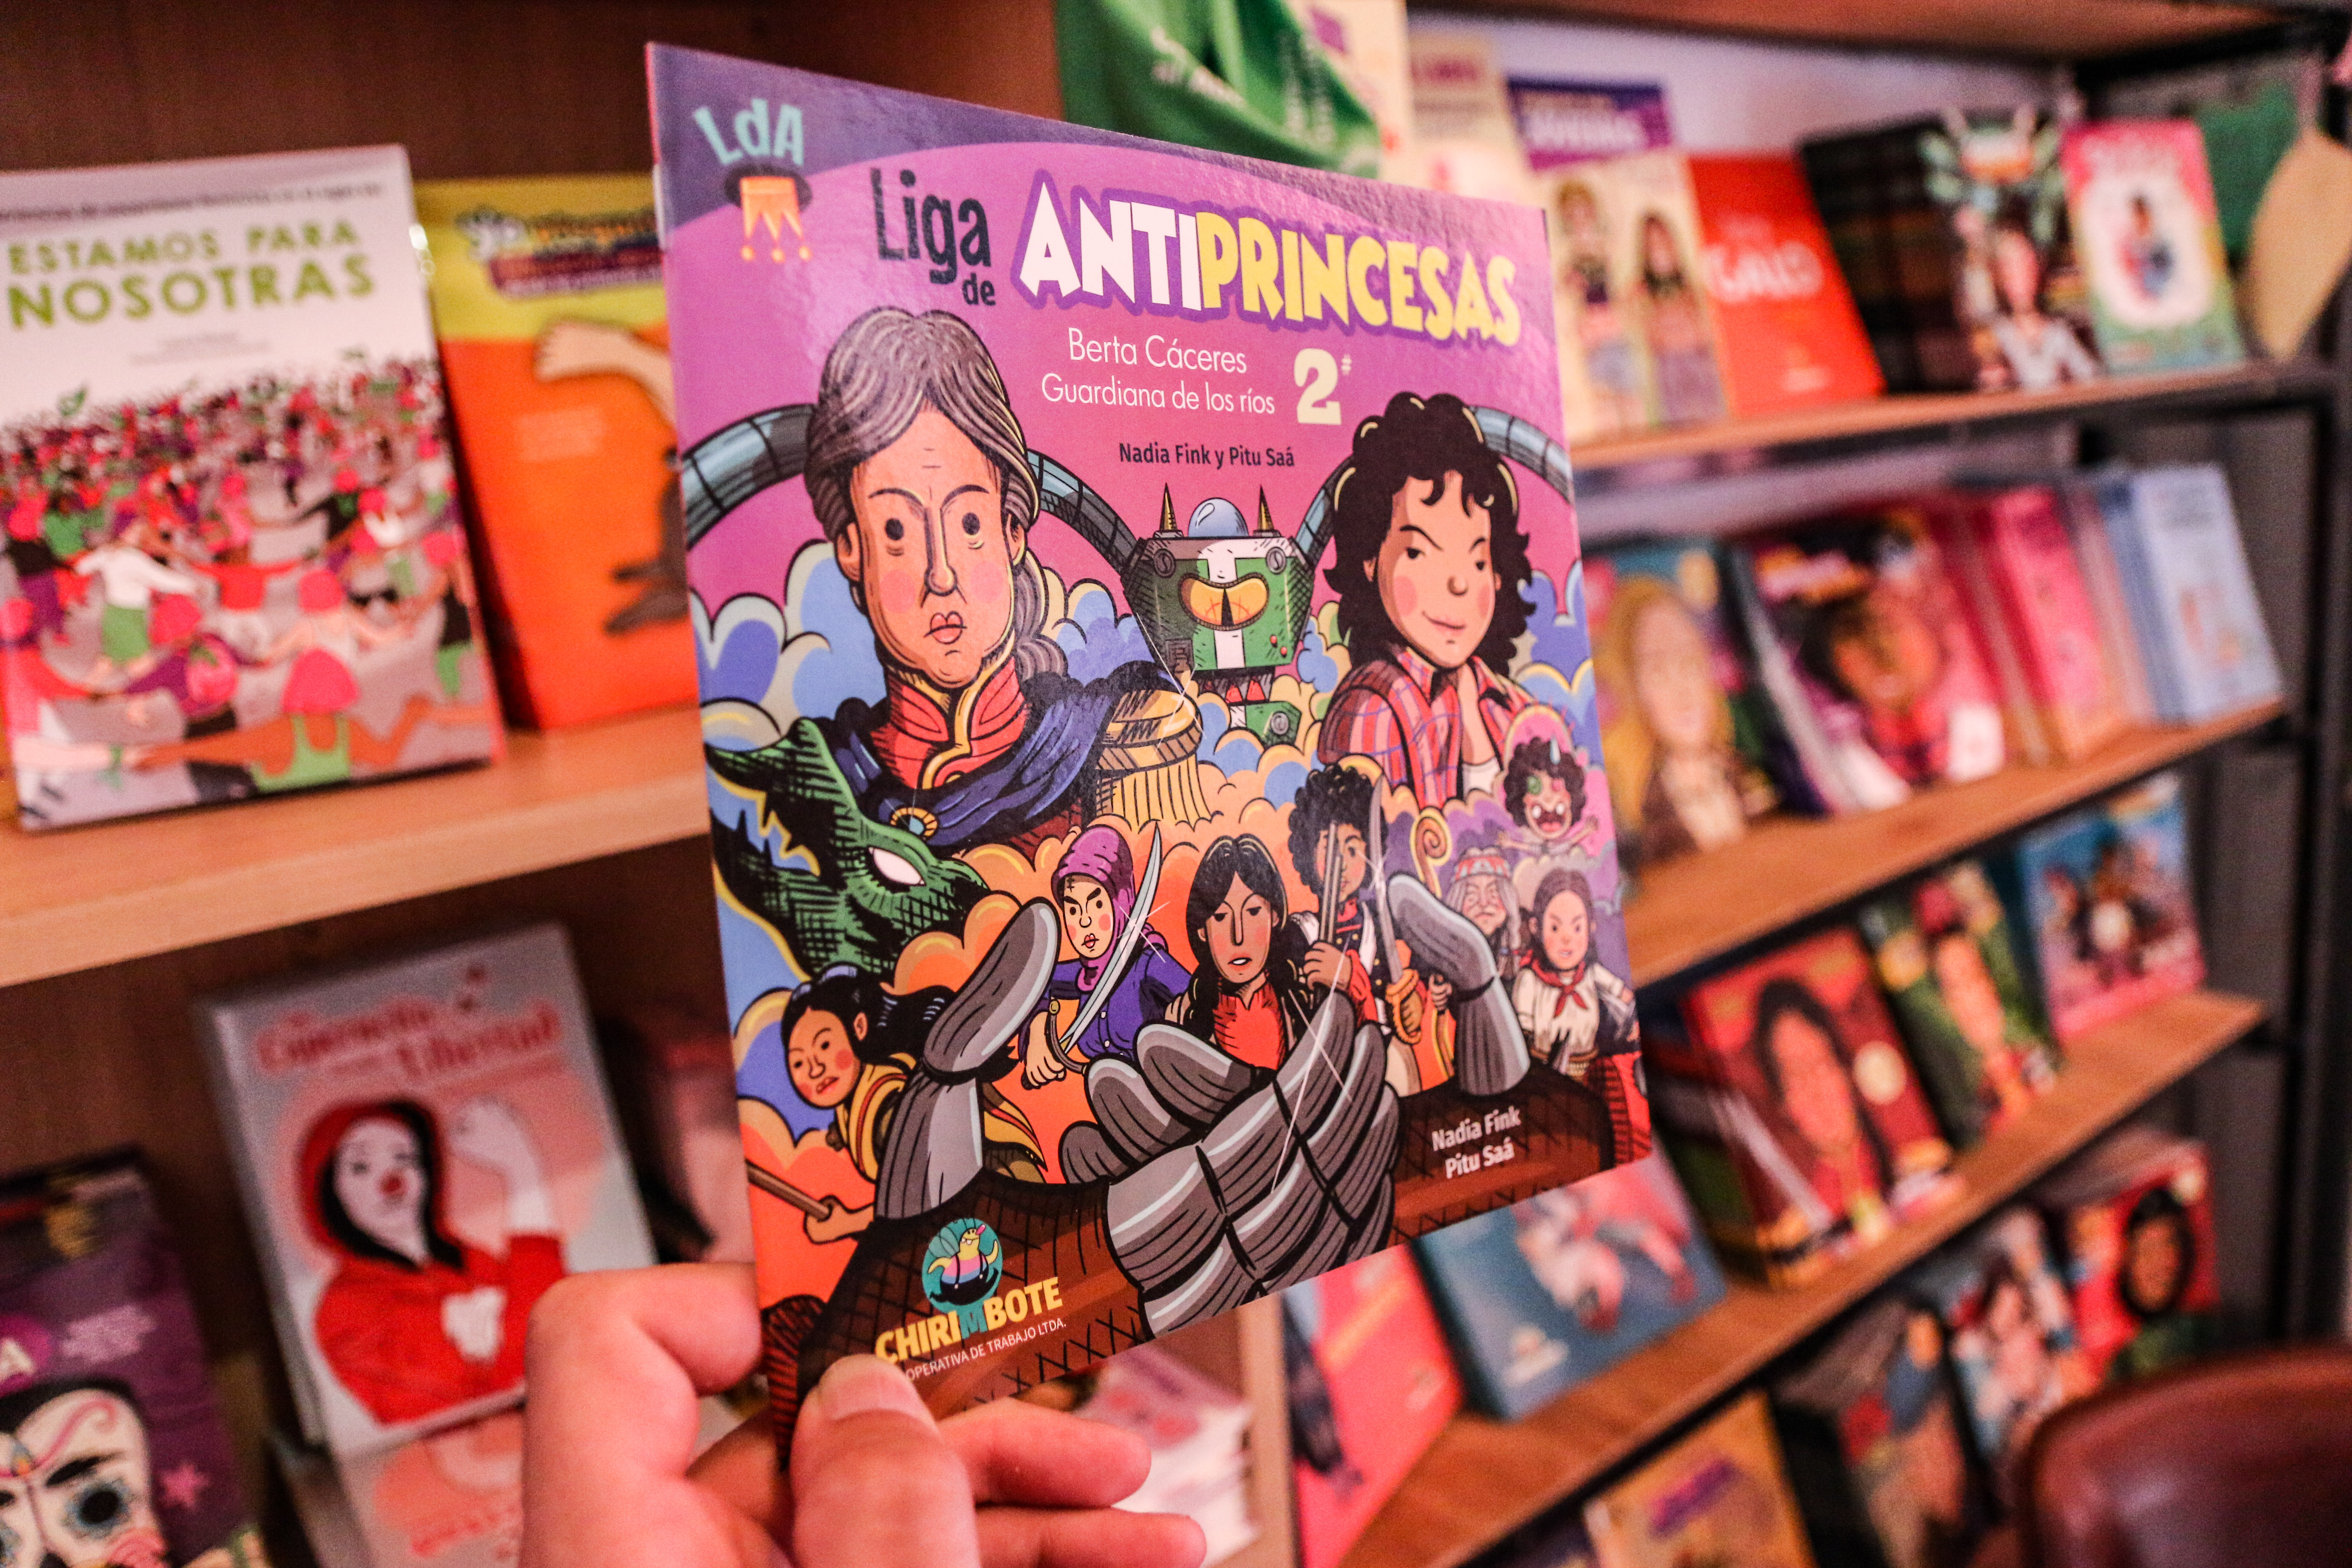 Los libros de Chirimbote tienen una fuerte impronta latinoamericana y su distribución llega a varios países de la región. Foto: Luis Iramain